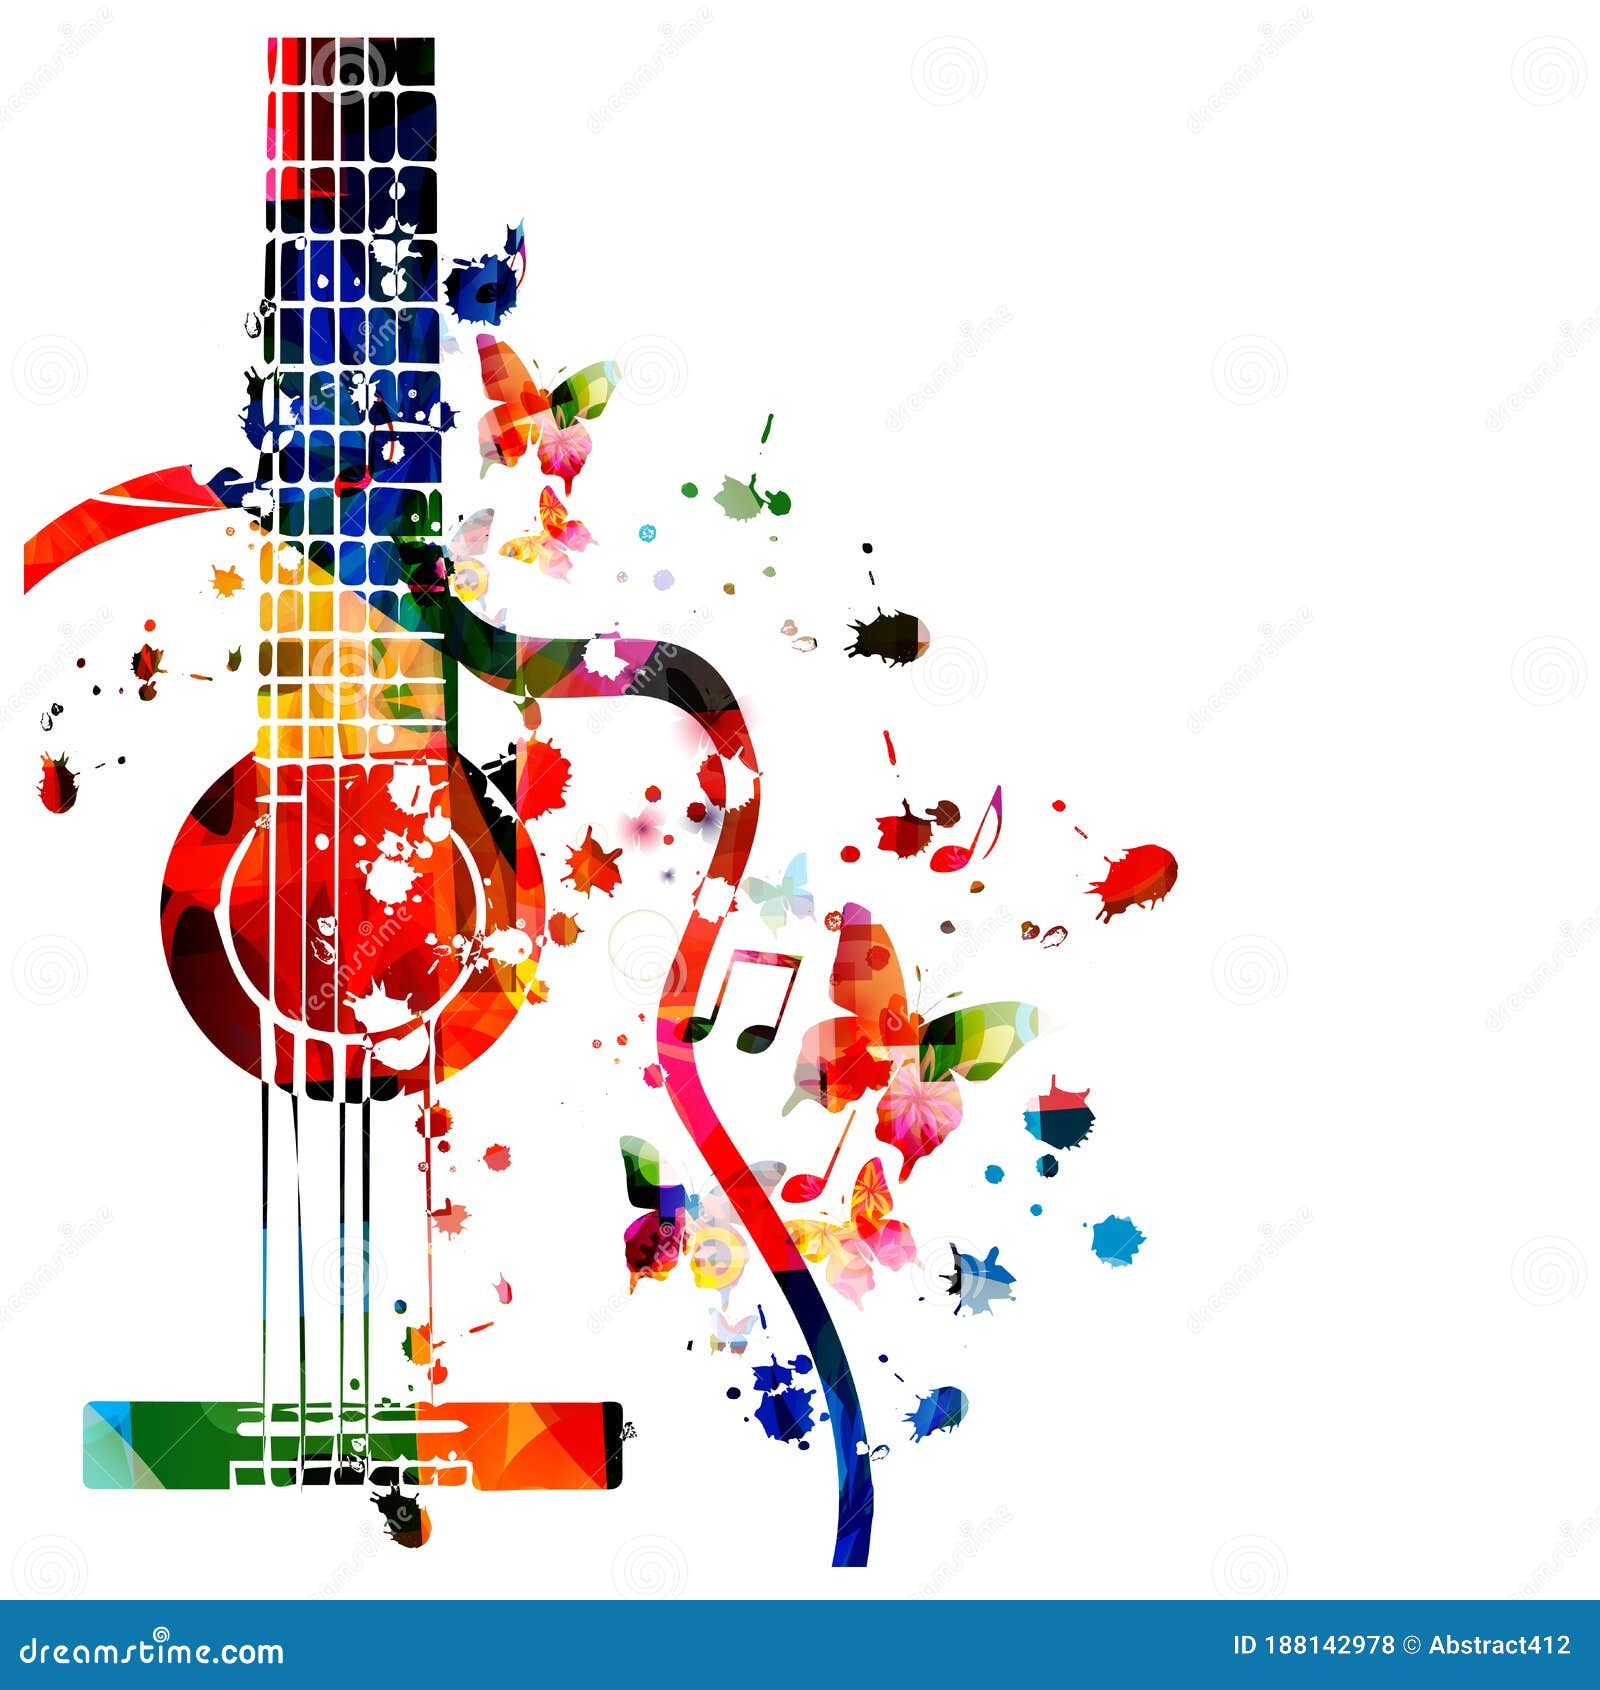 Yêu âm nhạc và muốn tìm thấy một cây đàn guitar đầy sắc màu để thỏa mãn sự đam mê của mình? Hãy xem hình ảnh này với những nốt nhạc vô cùng cuốn hút trên cây đàn ghita này.